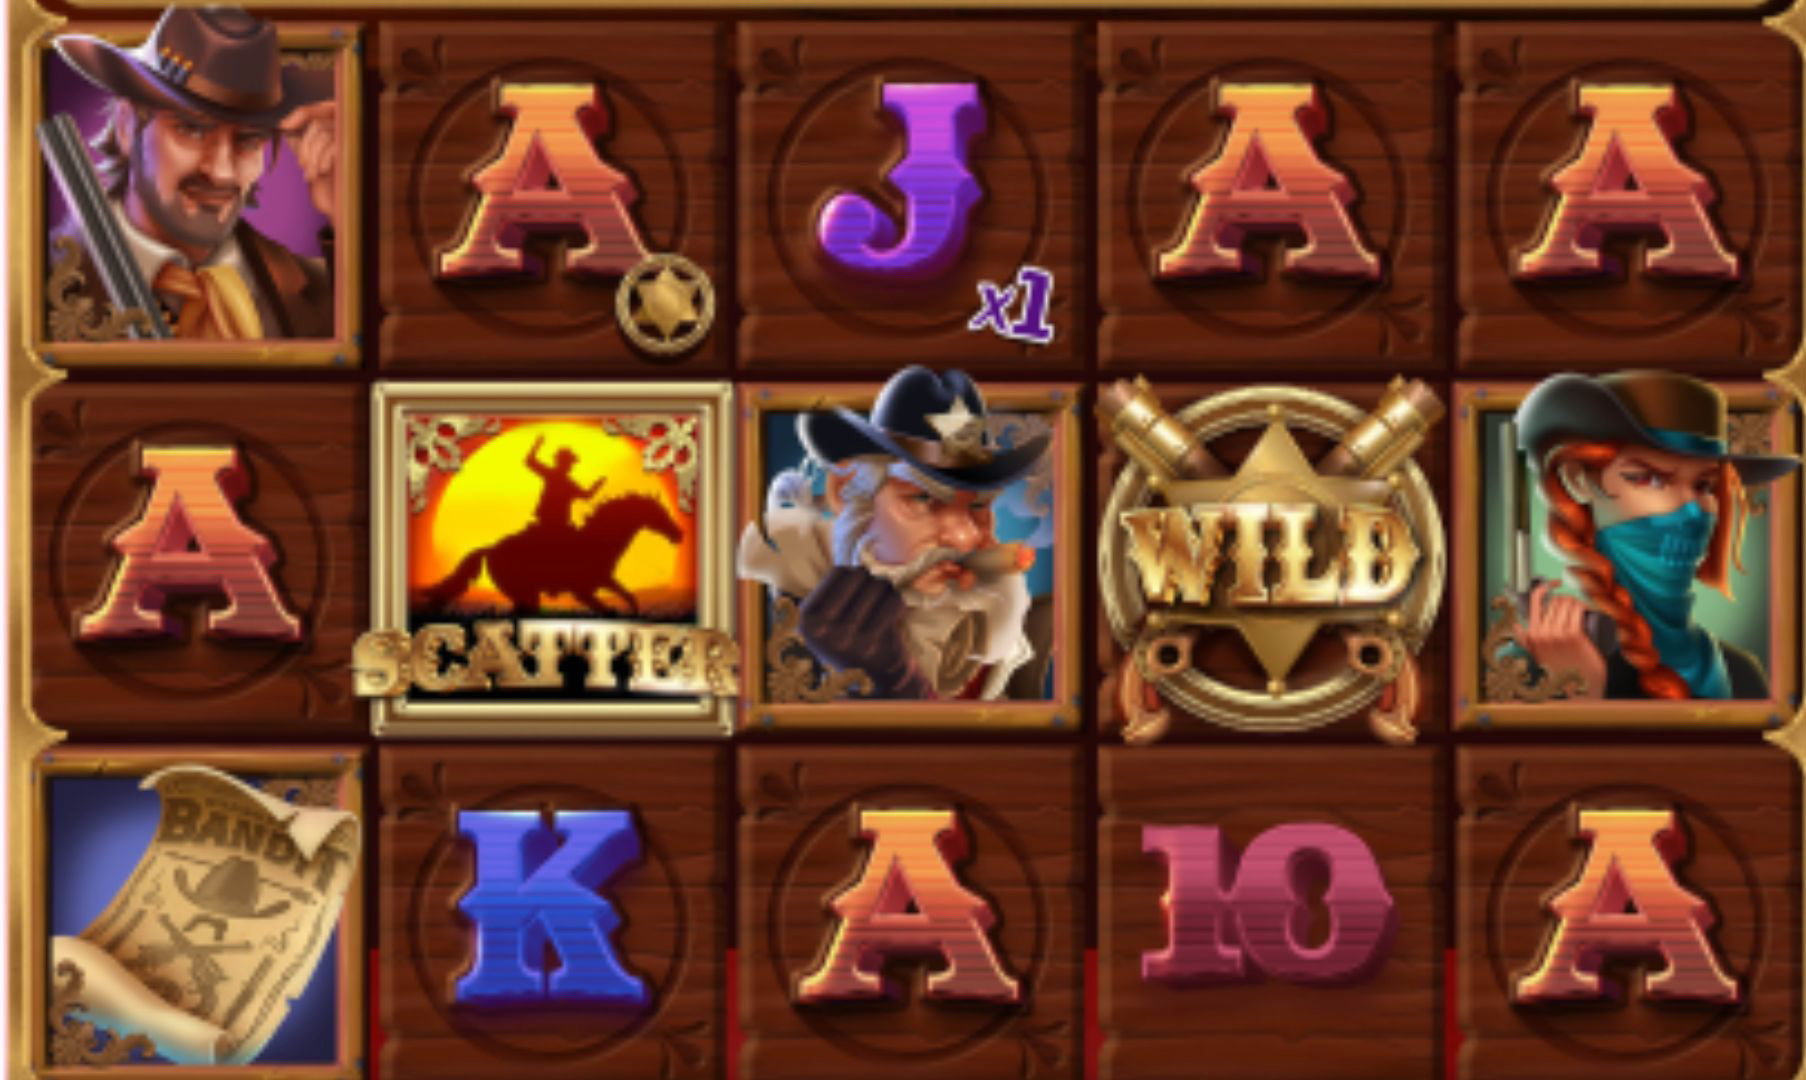 gamepla slot wild west saloon